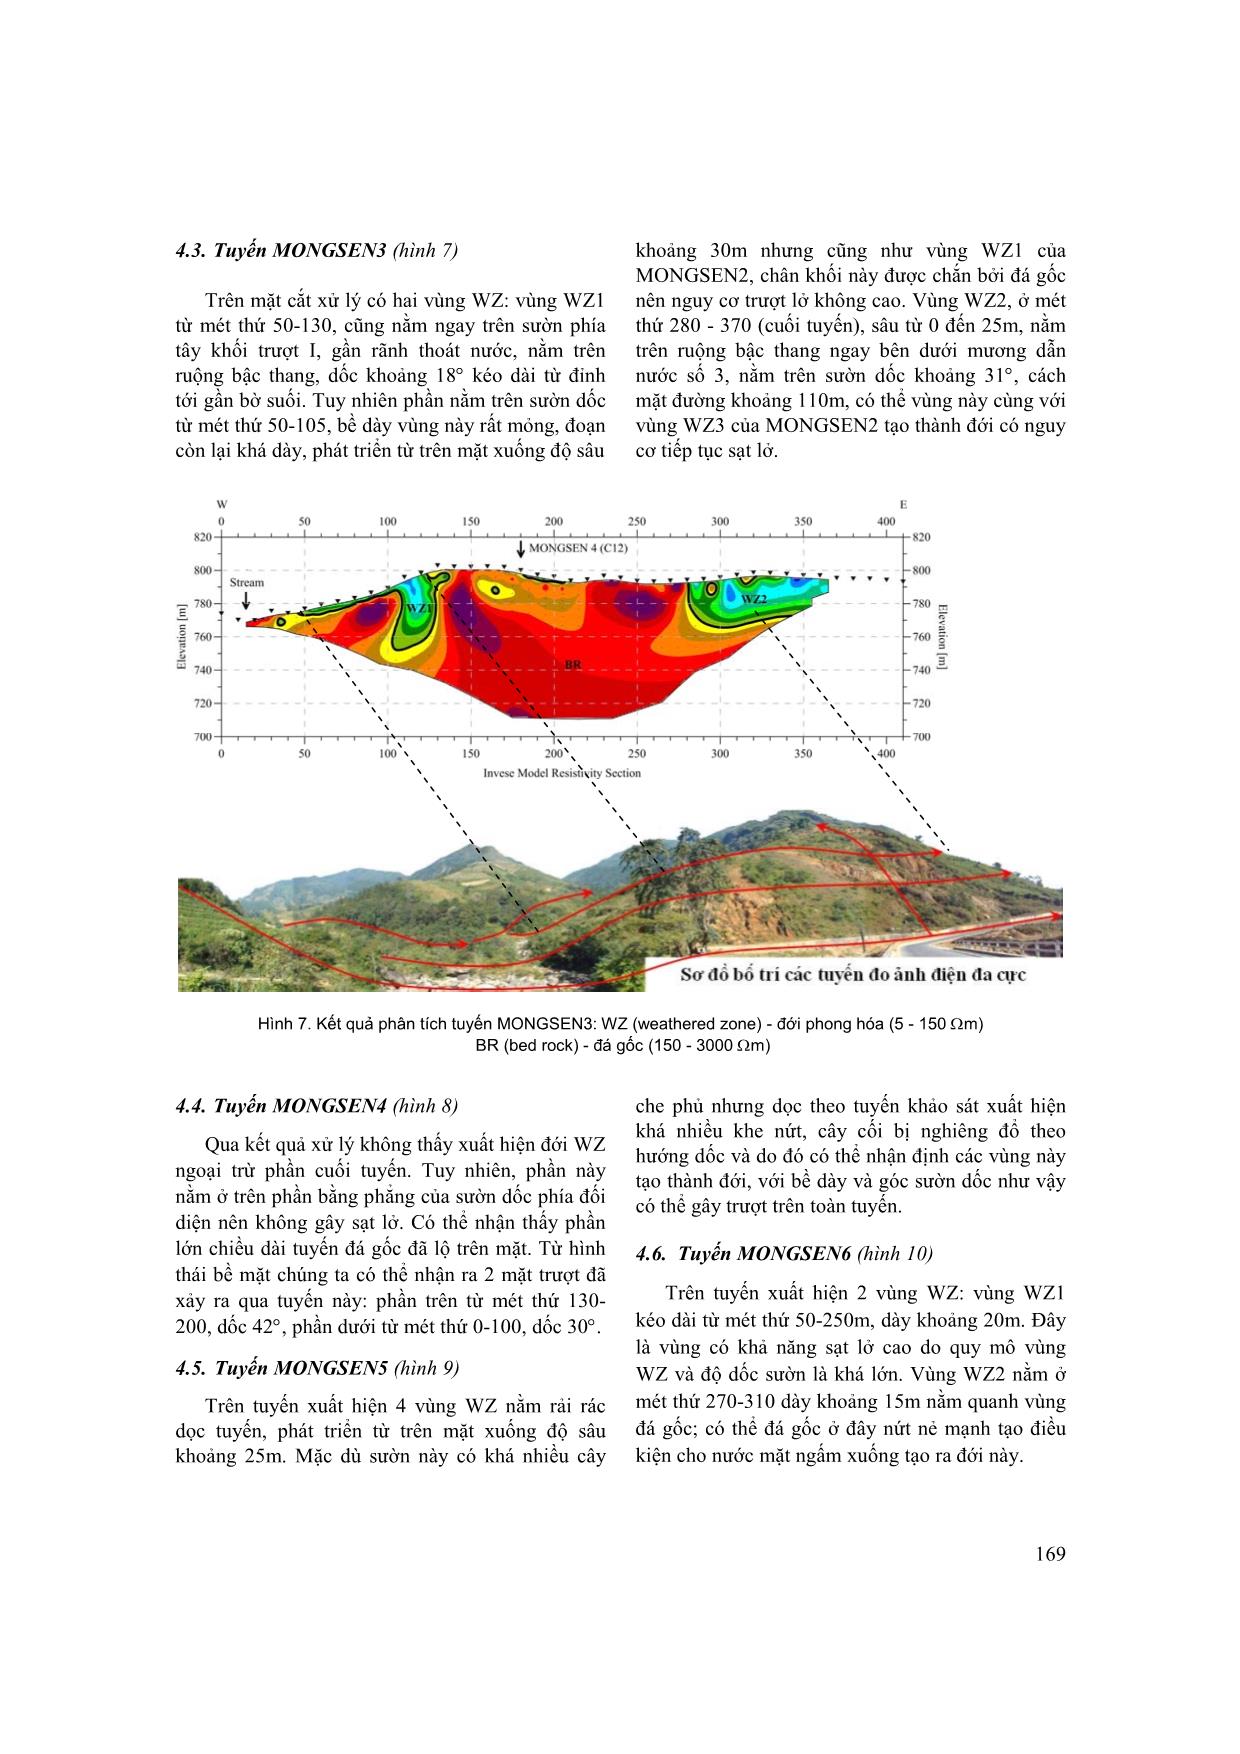 Nghiên cứu xác định nguyên nhân trượt lở khu vực cầu Móng Sến, tỉnh Lào Cai trang 6